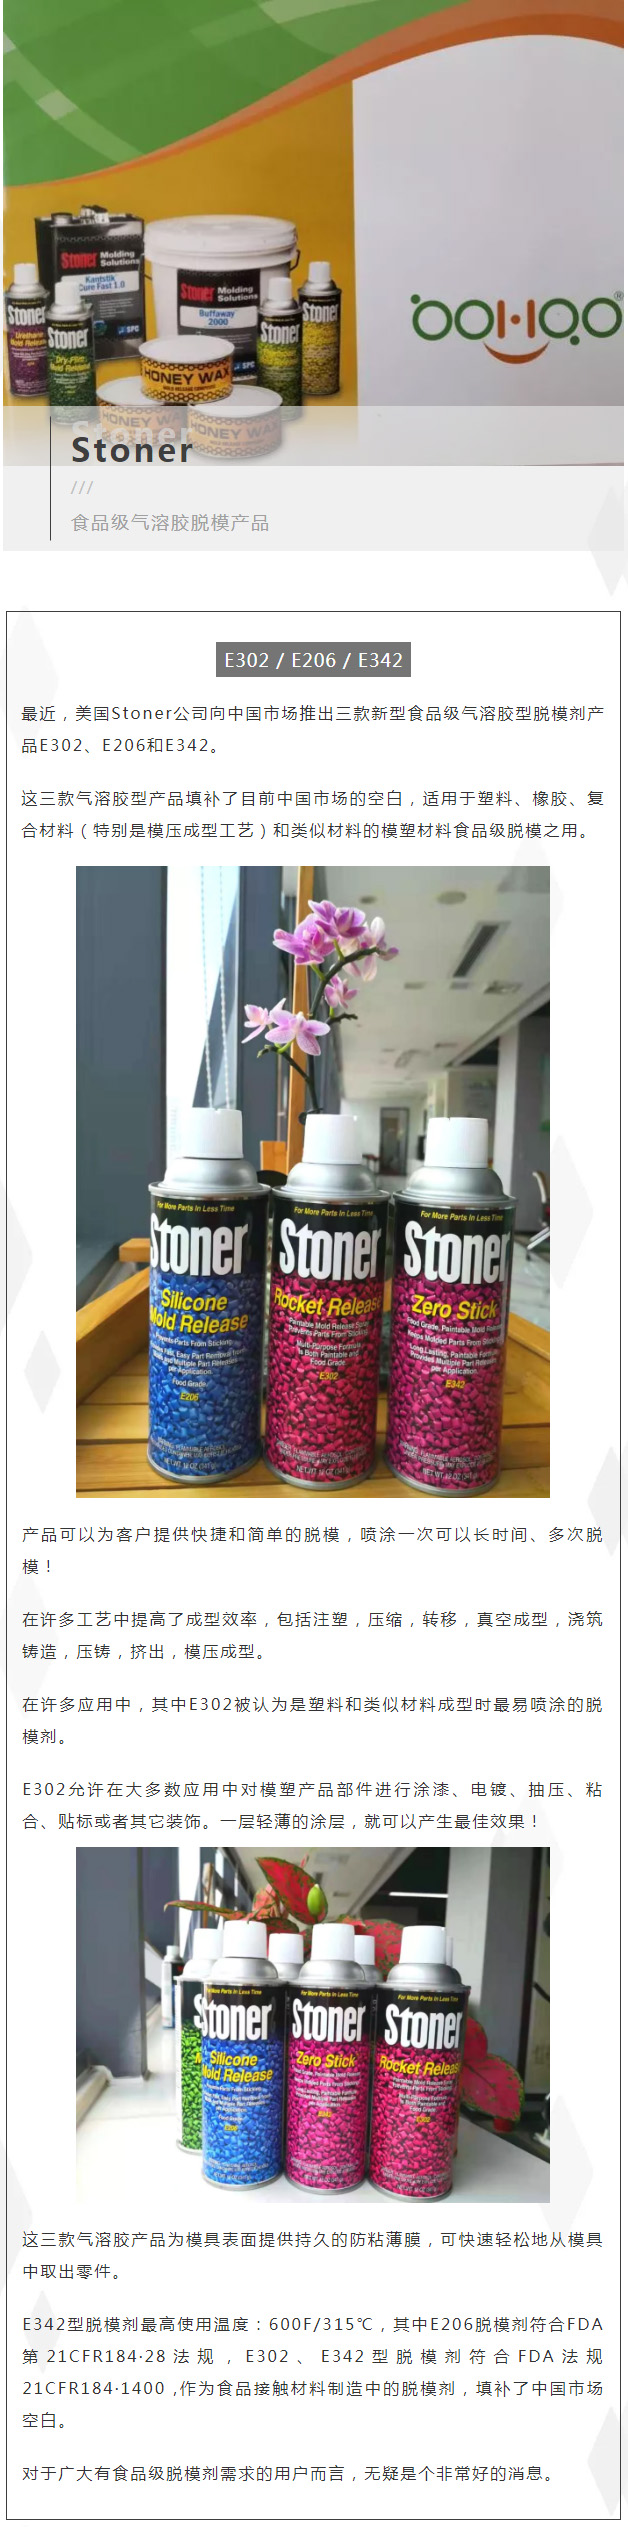 Stoner公司与广东博皓携手合作向中国市场推出三款食品级气溶胶脱模产品